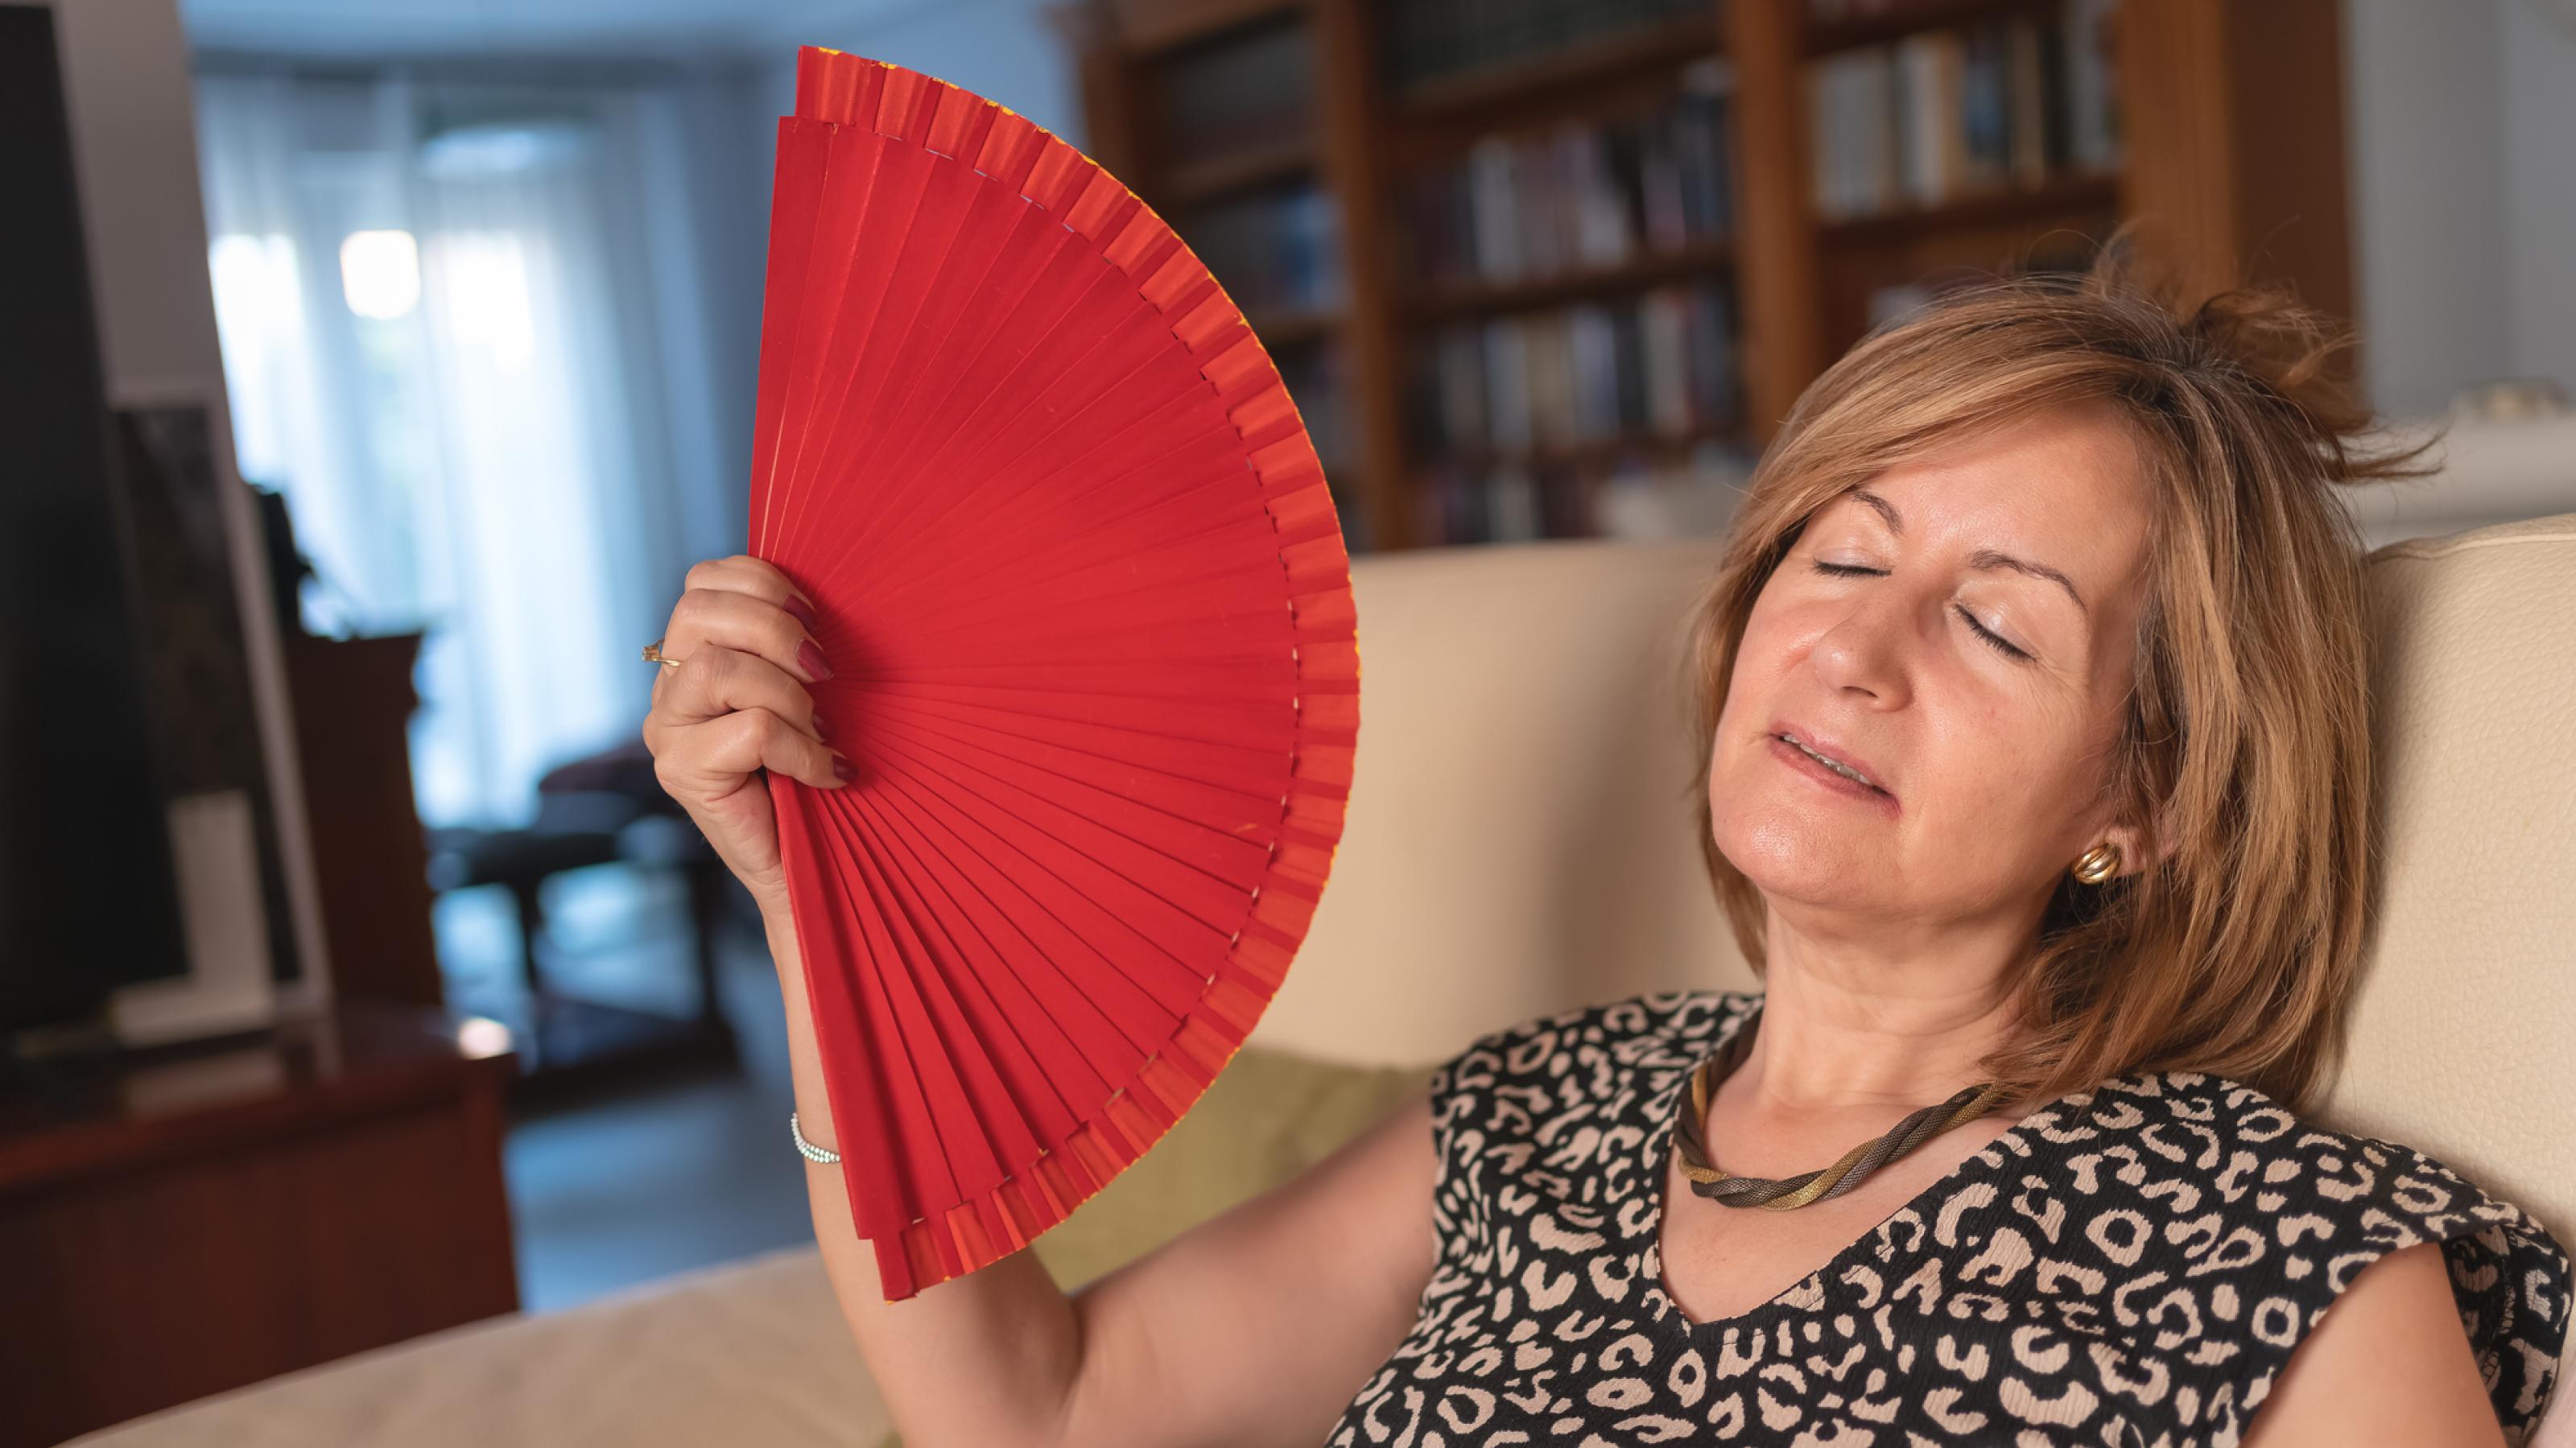 Frau im mittleren Alter, sitzt in ihrem Wohnzimmer auf dem Sofa und wedelt mit einem roten Handfächer vor ihrem Gesicht, um sich abzukühlen